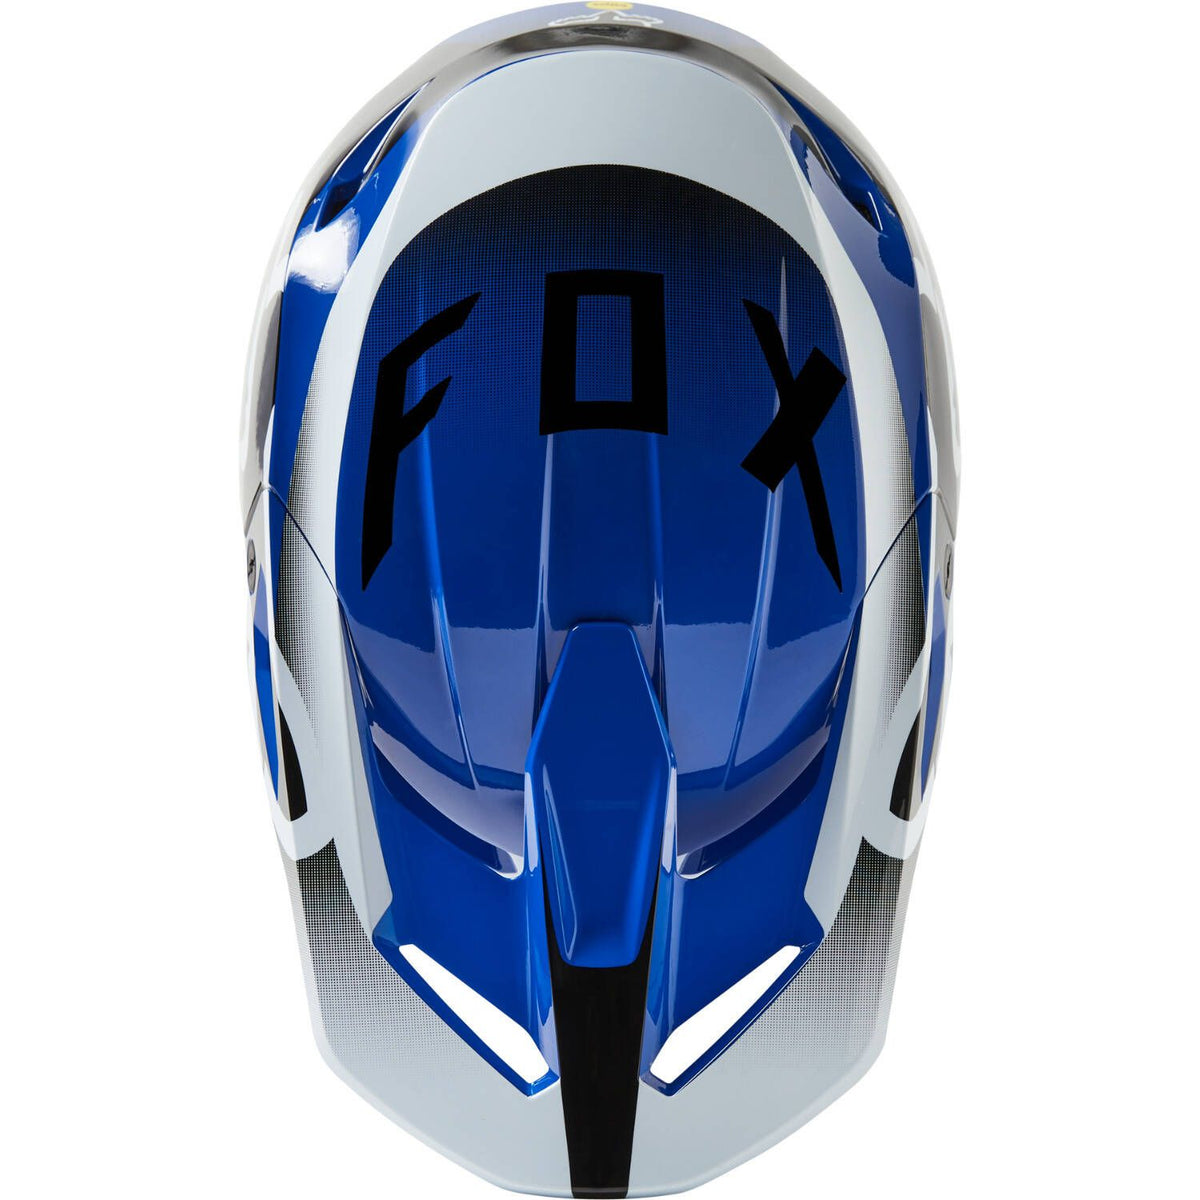 Fox Racing V1 Leed Helmet - Cycle Gear